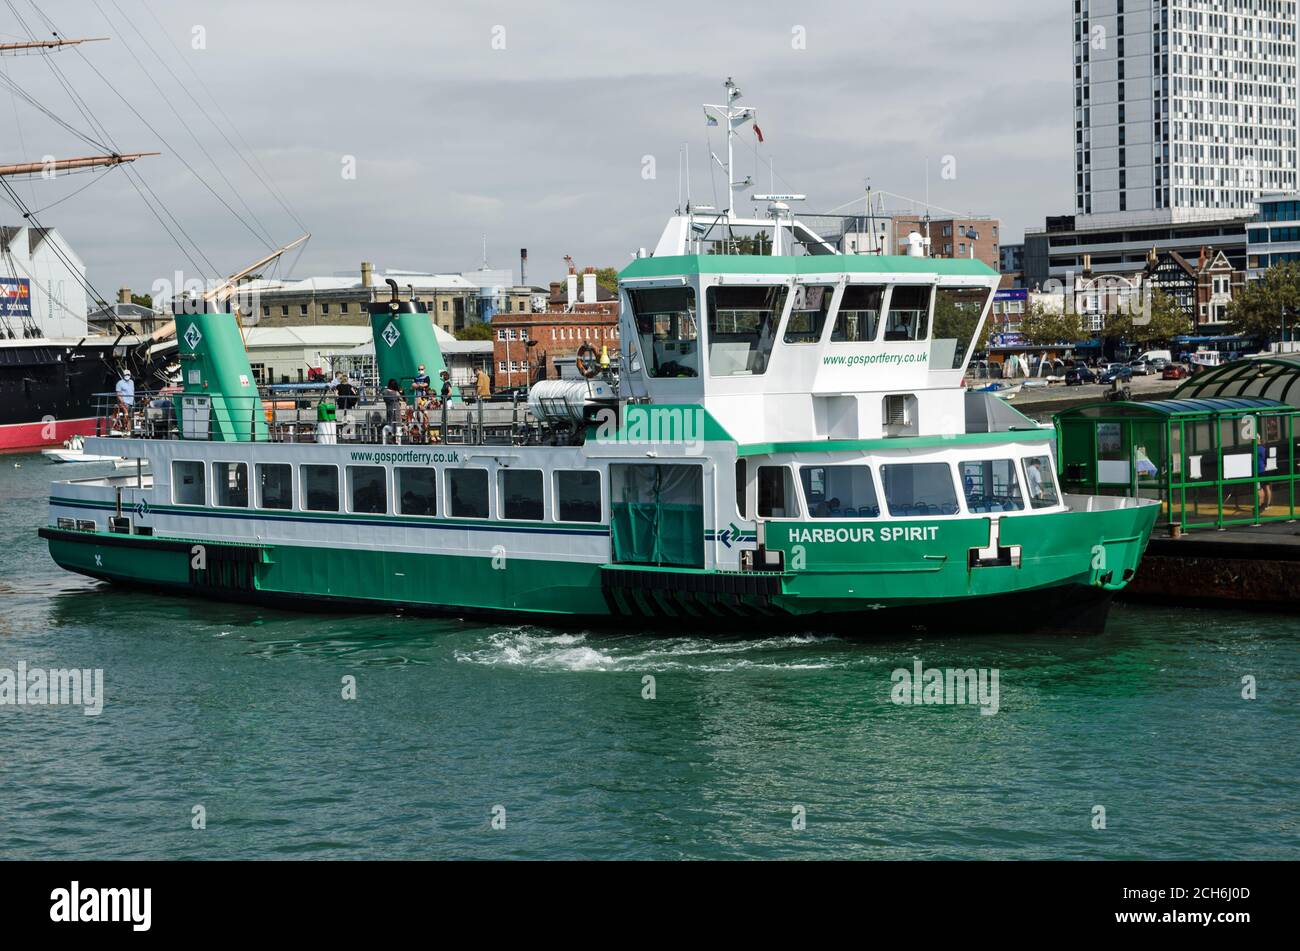 Portsmouth, Royaume-Uni - 8 septembre 2020 : le bateau Harbour Spirit, l'un des bateaux passagers du service de ferry de Gosport reliant Gosport et Portsmouth Ha Banque D'Images